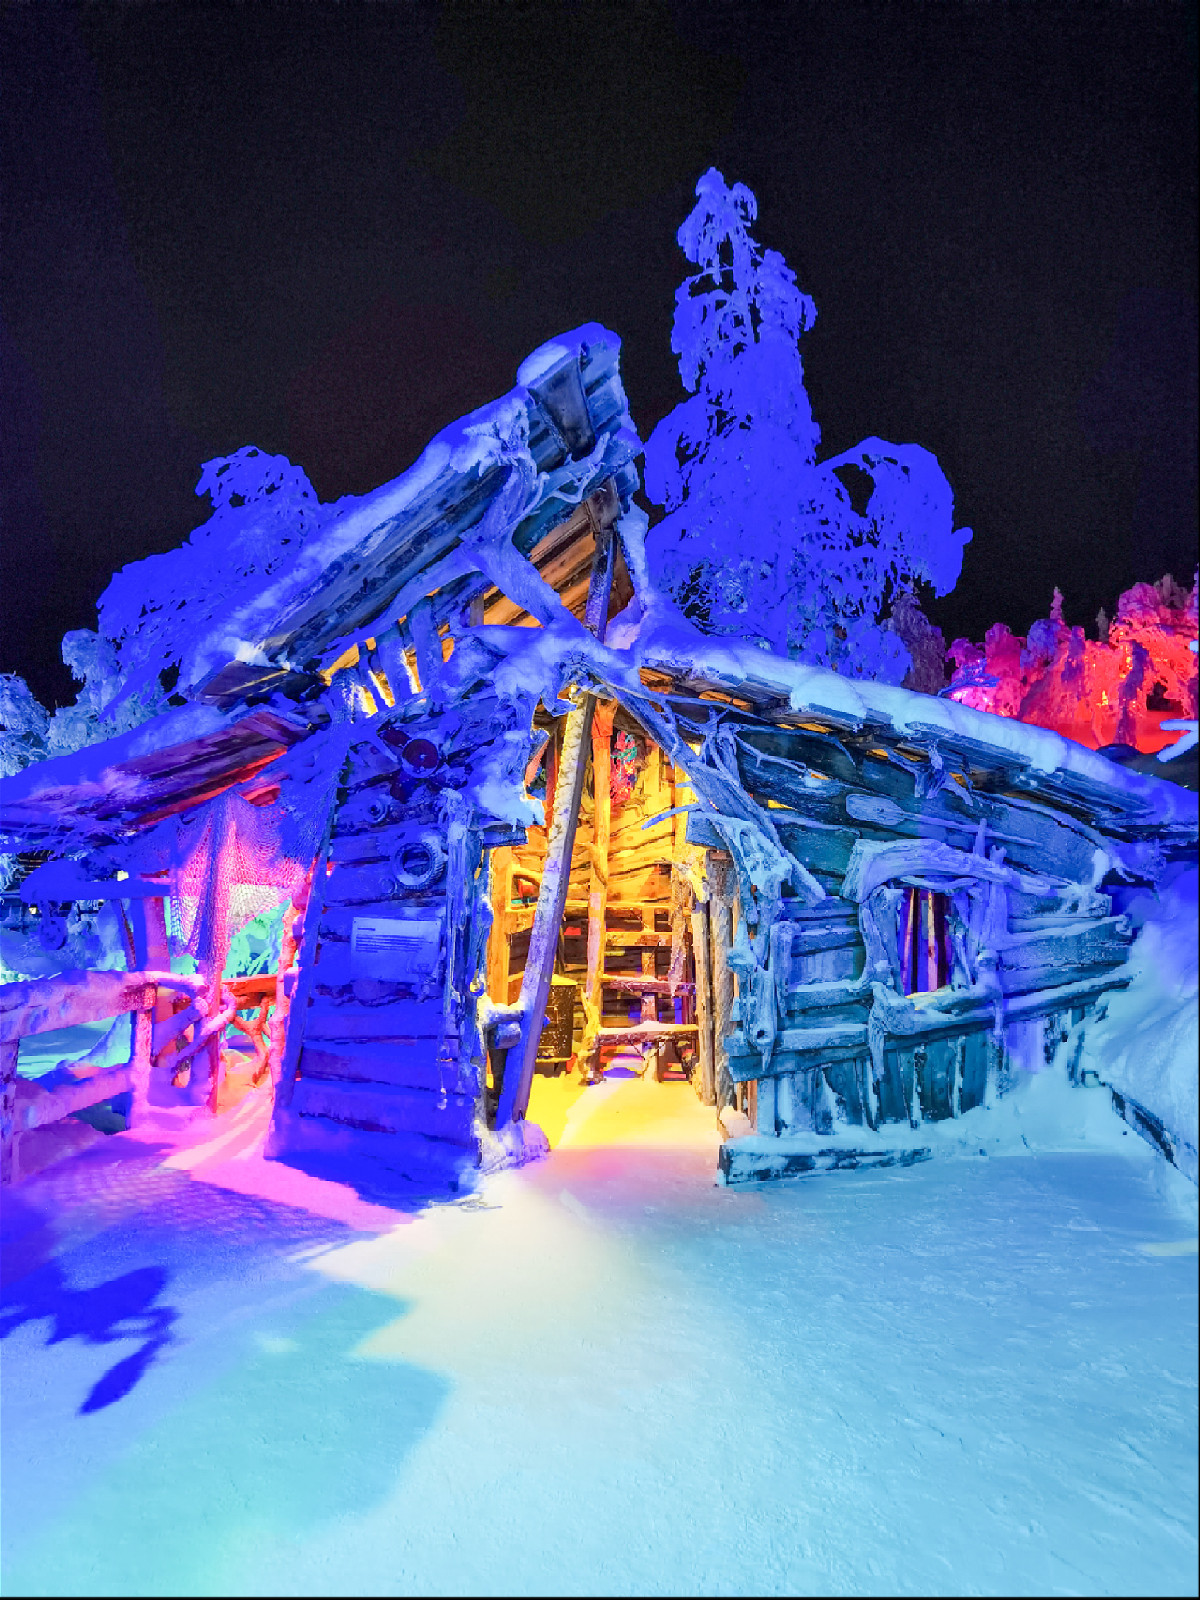 деревянный дом с разноцветной подсветкой в зимнем лесу